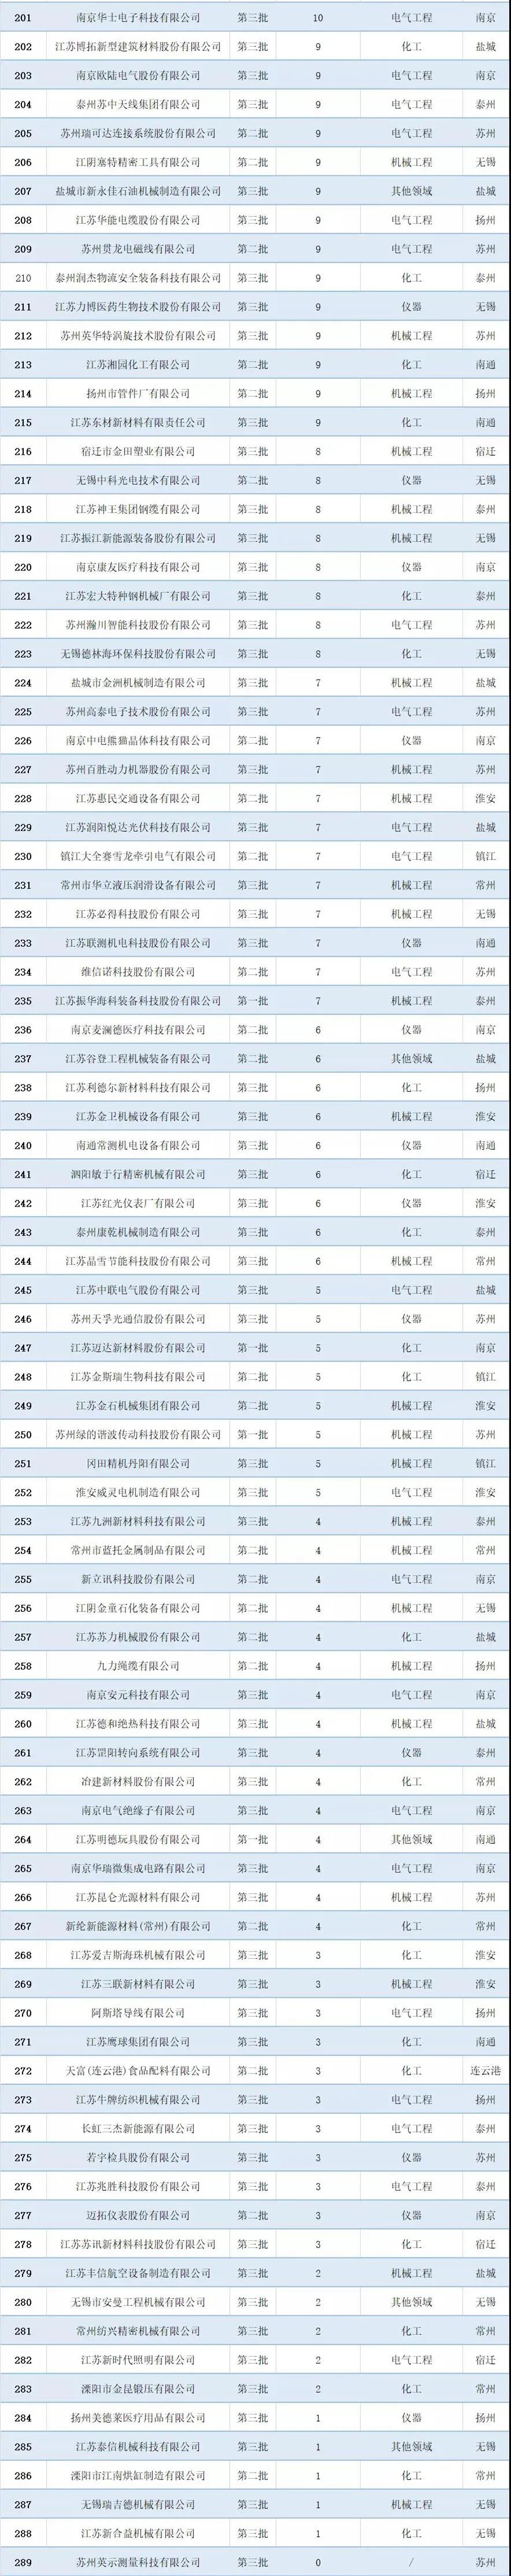 2021年江苏省专精特新企业“小巨人”专利排行榜